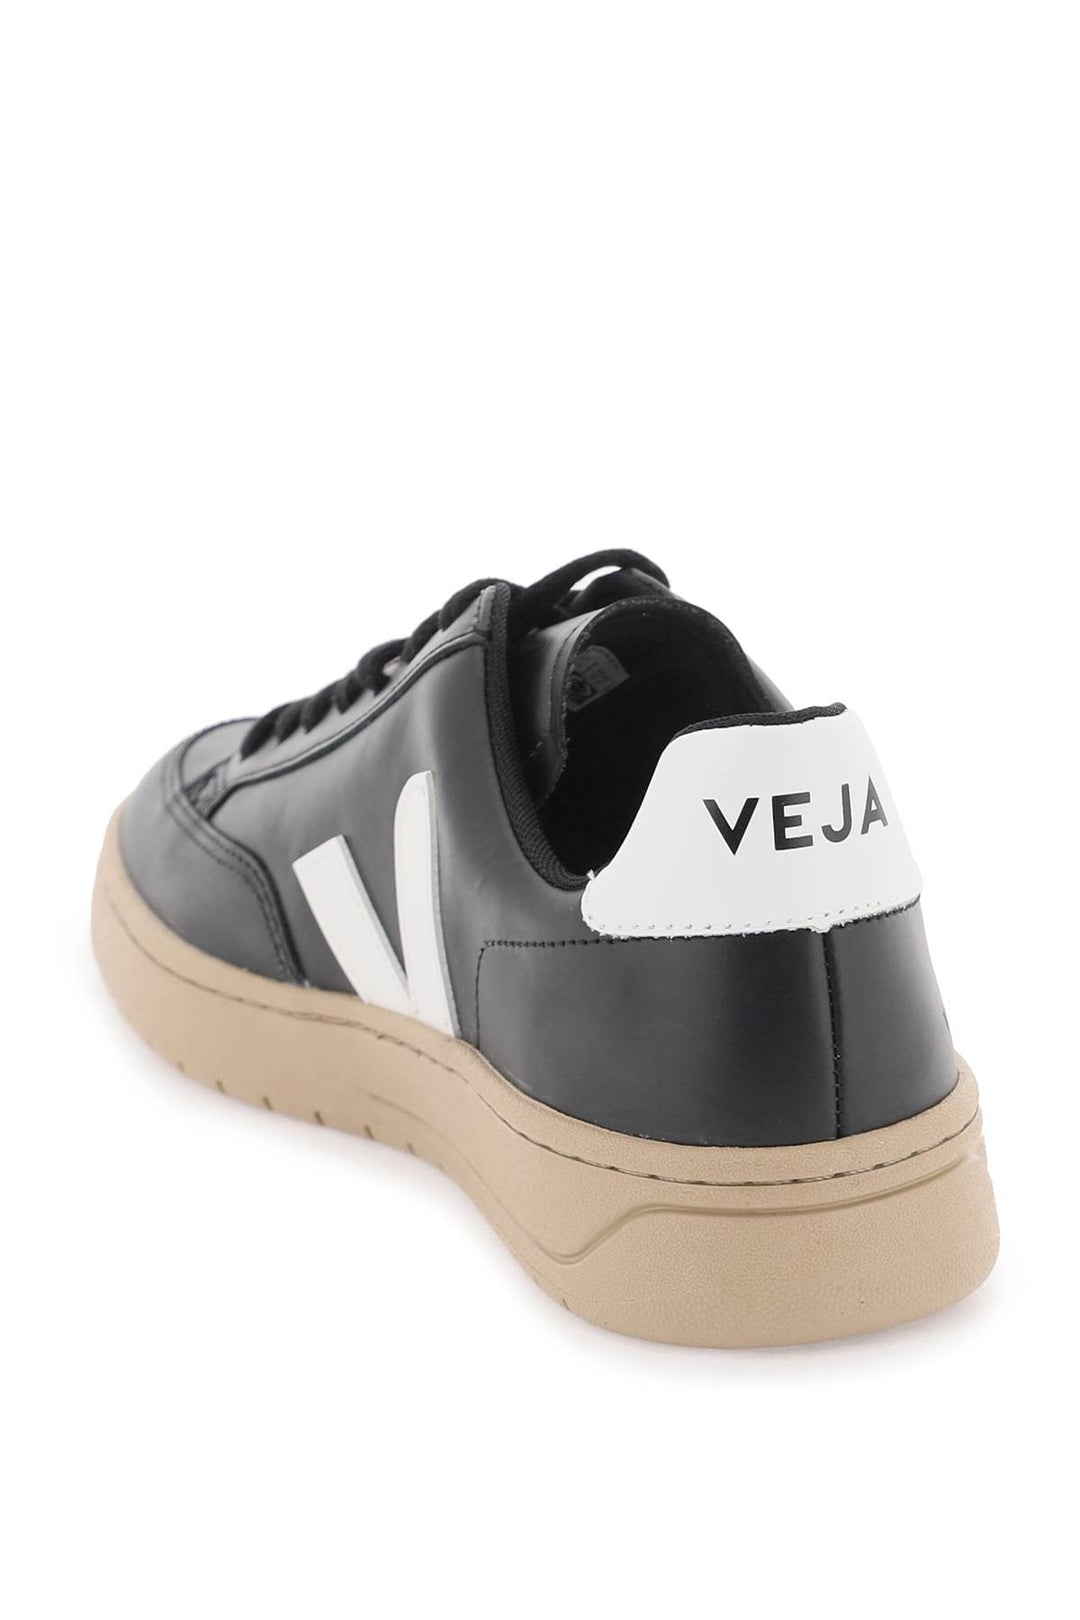 Veja Leather V 12 Sneakers   Black